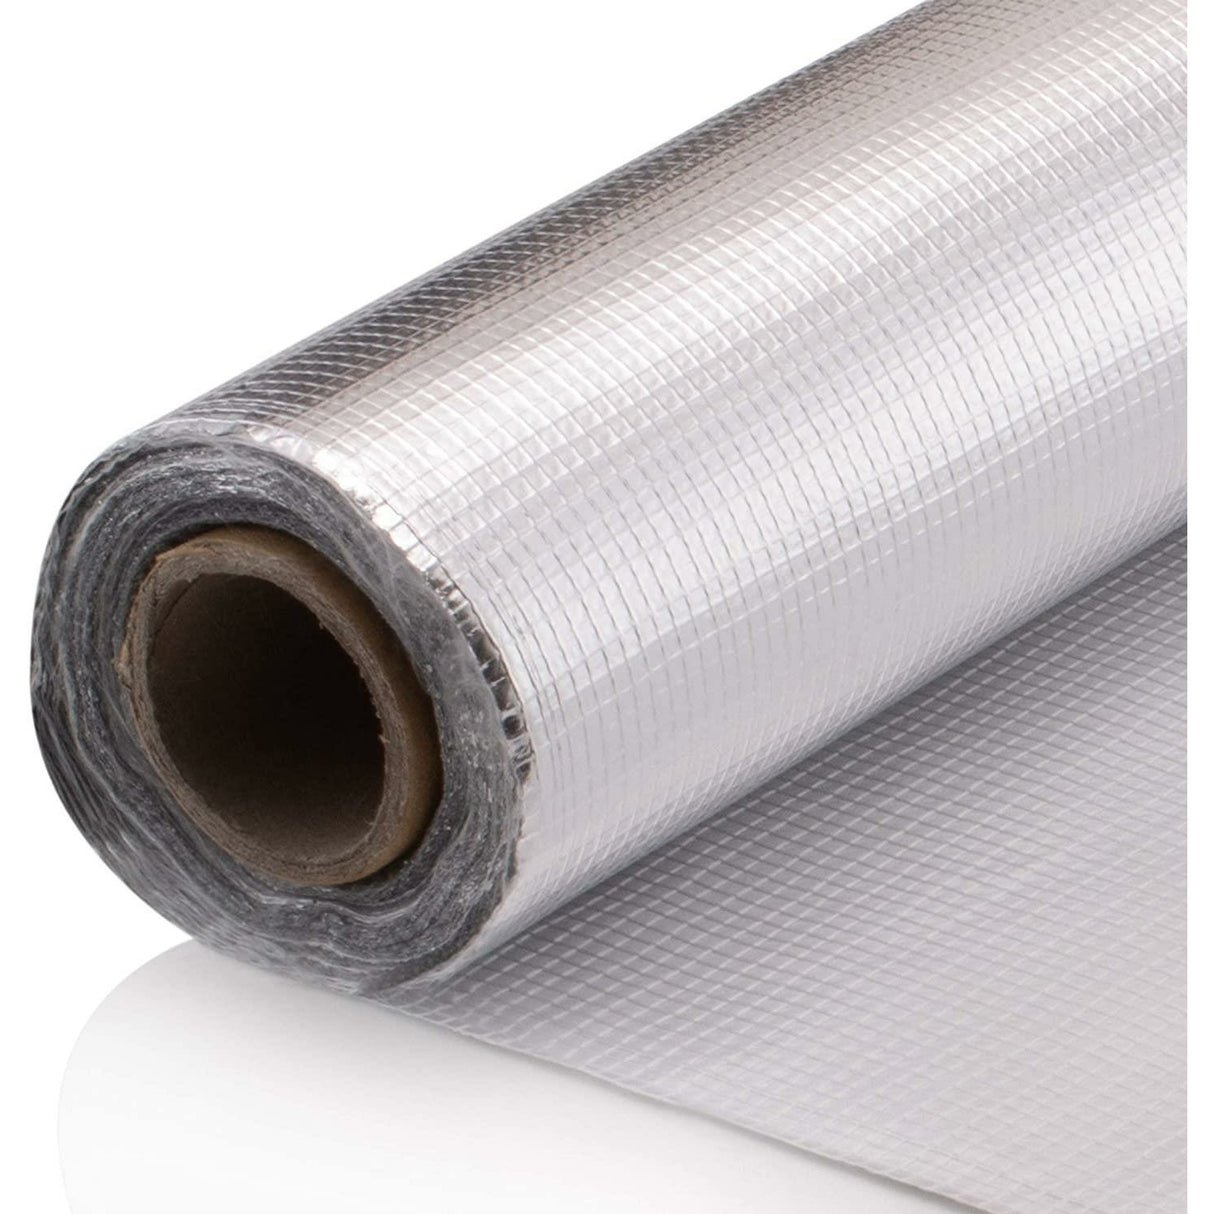 SuperFOIL Vapour Barrier & Waterproof Membrane SFTV1L (1.2m x 20m) (6916079780019)